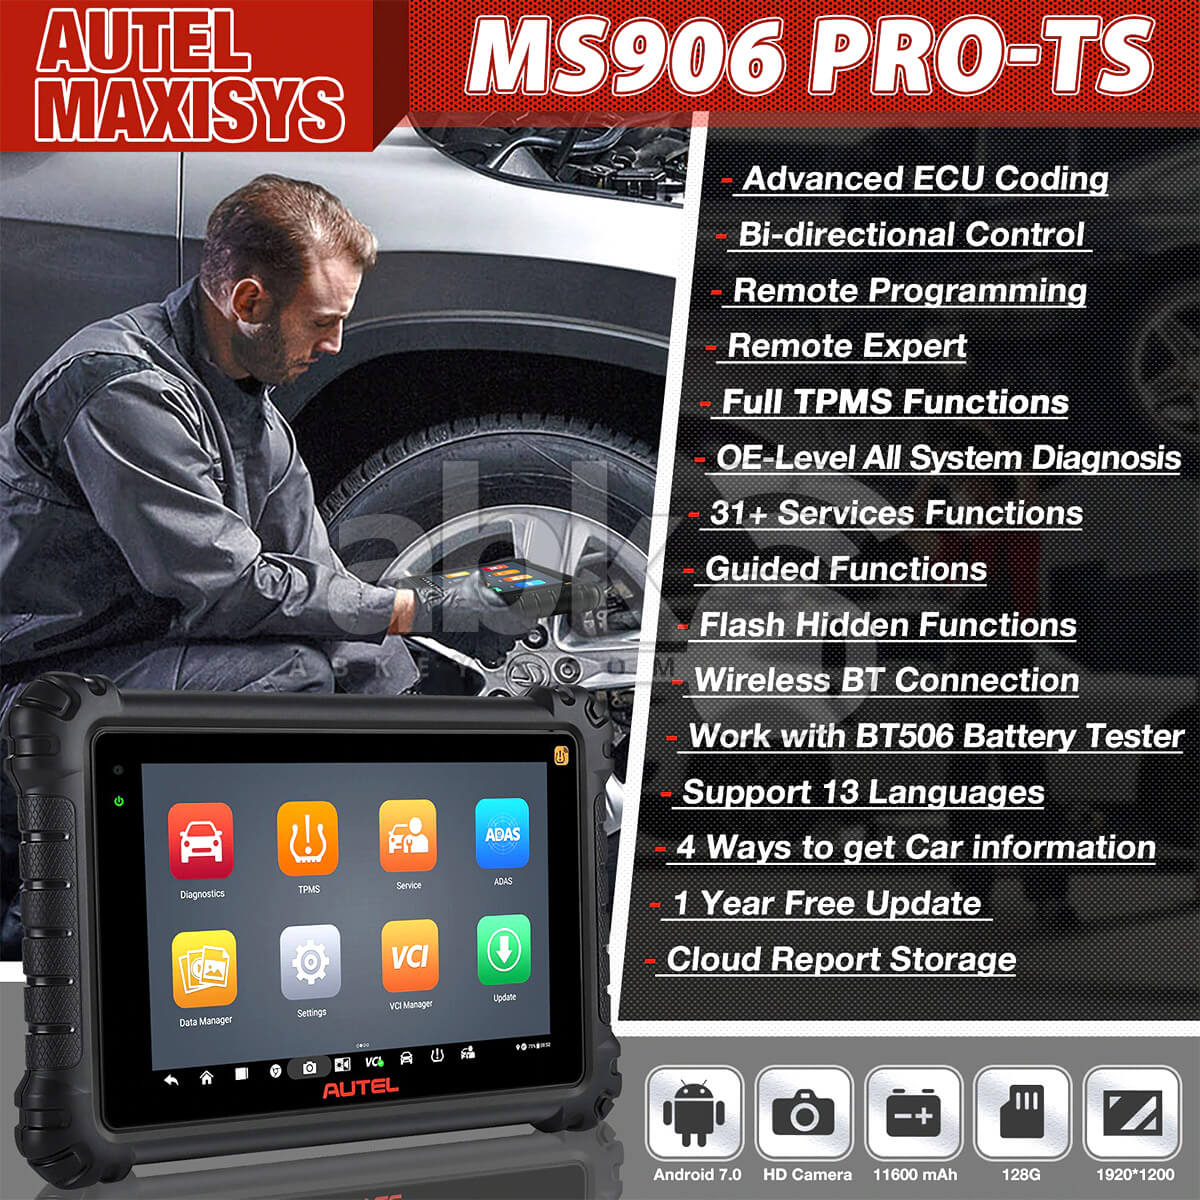 Autel Maxisys Ms906 Pro-Ts Escáner De Diagnóstico ABK-1297 |ABKEYS